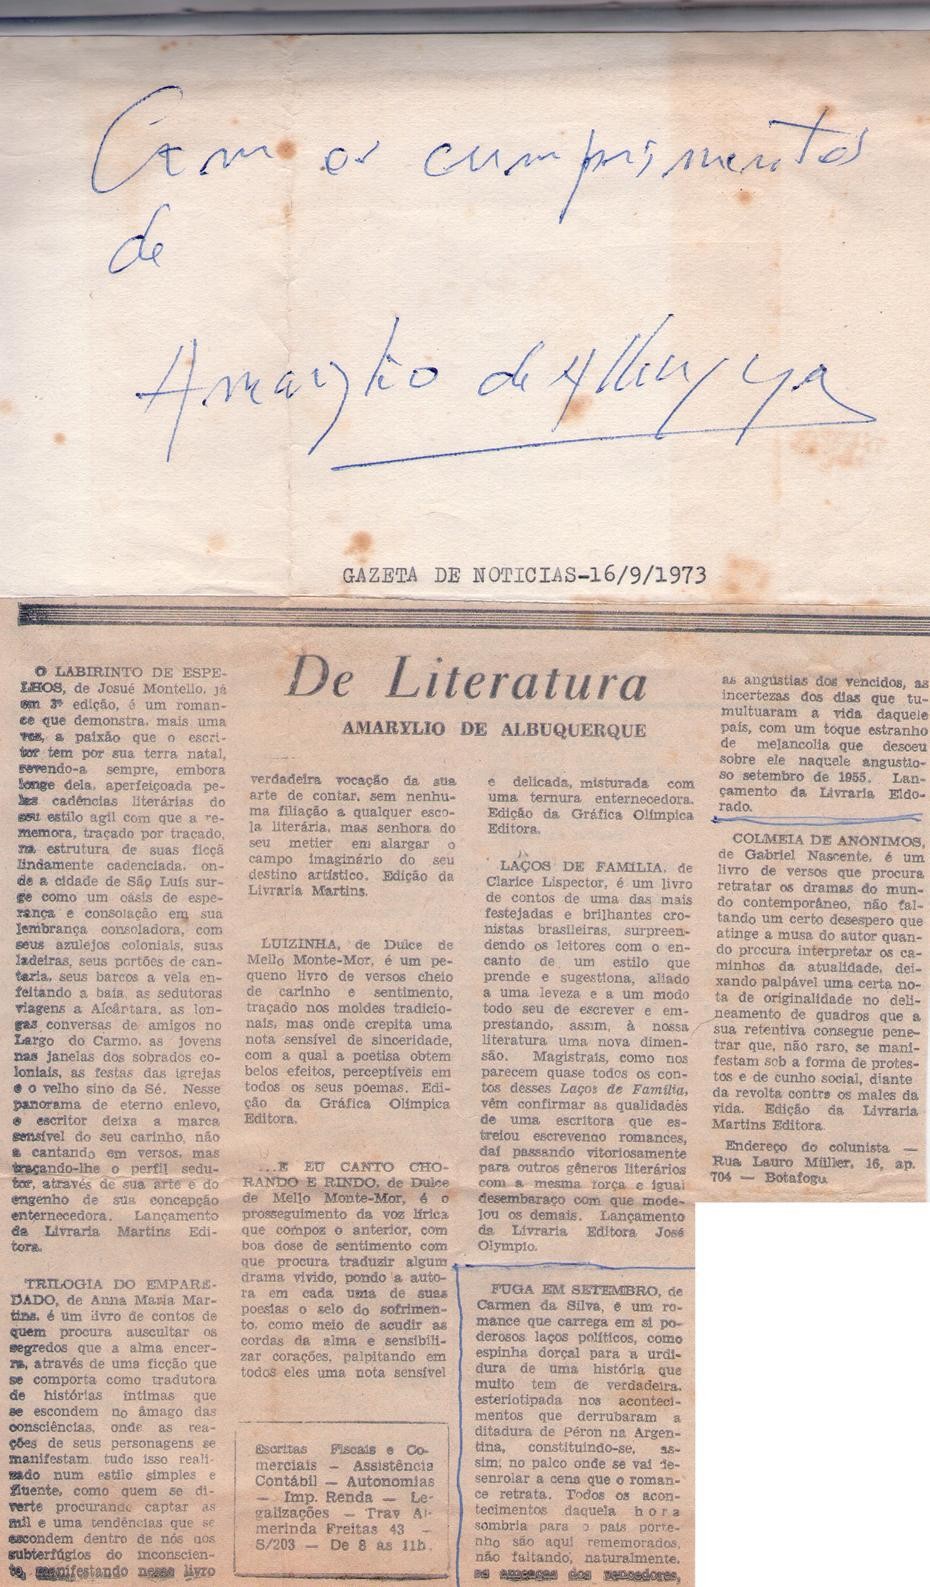 16 de Setembro de 1973 - Gazeta de Notícias. De Literatura.